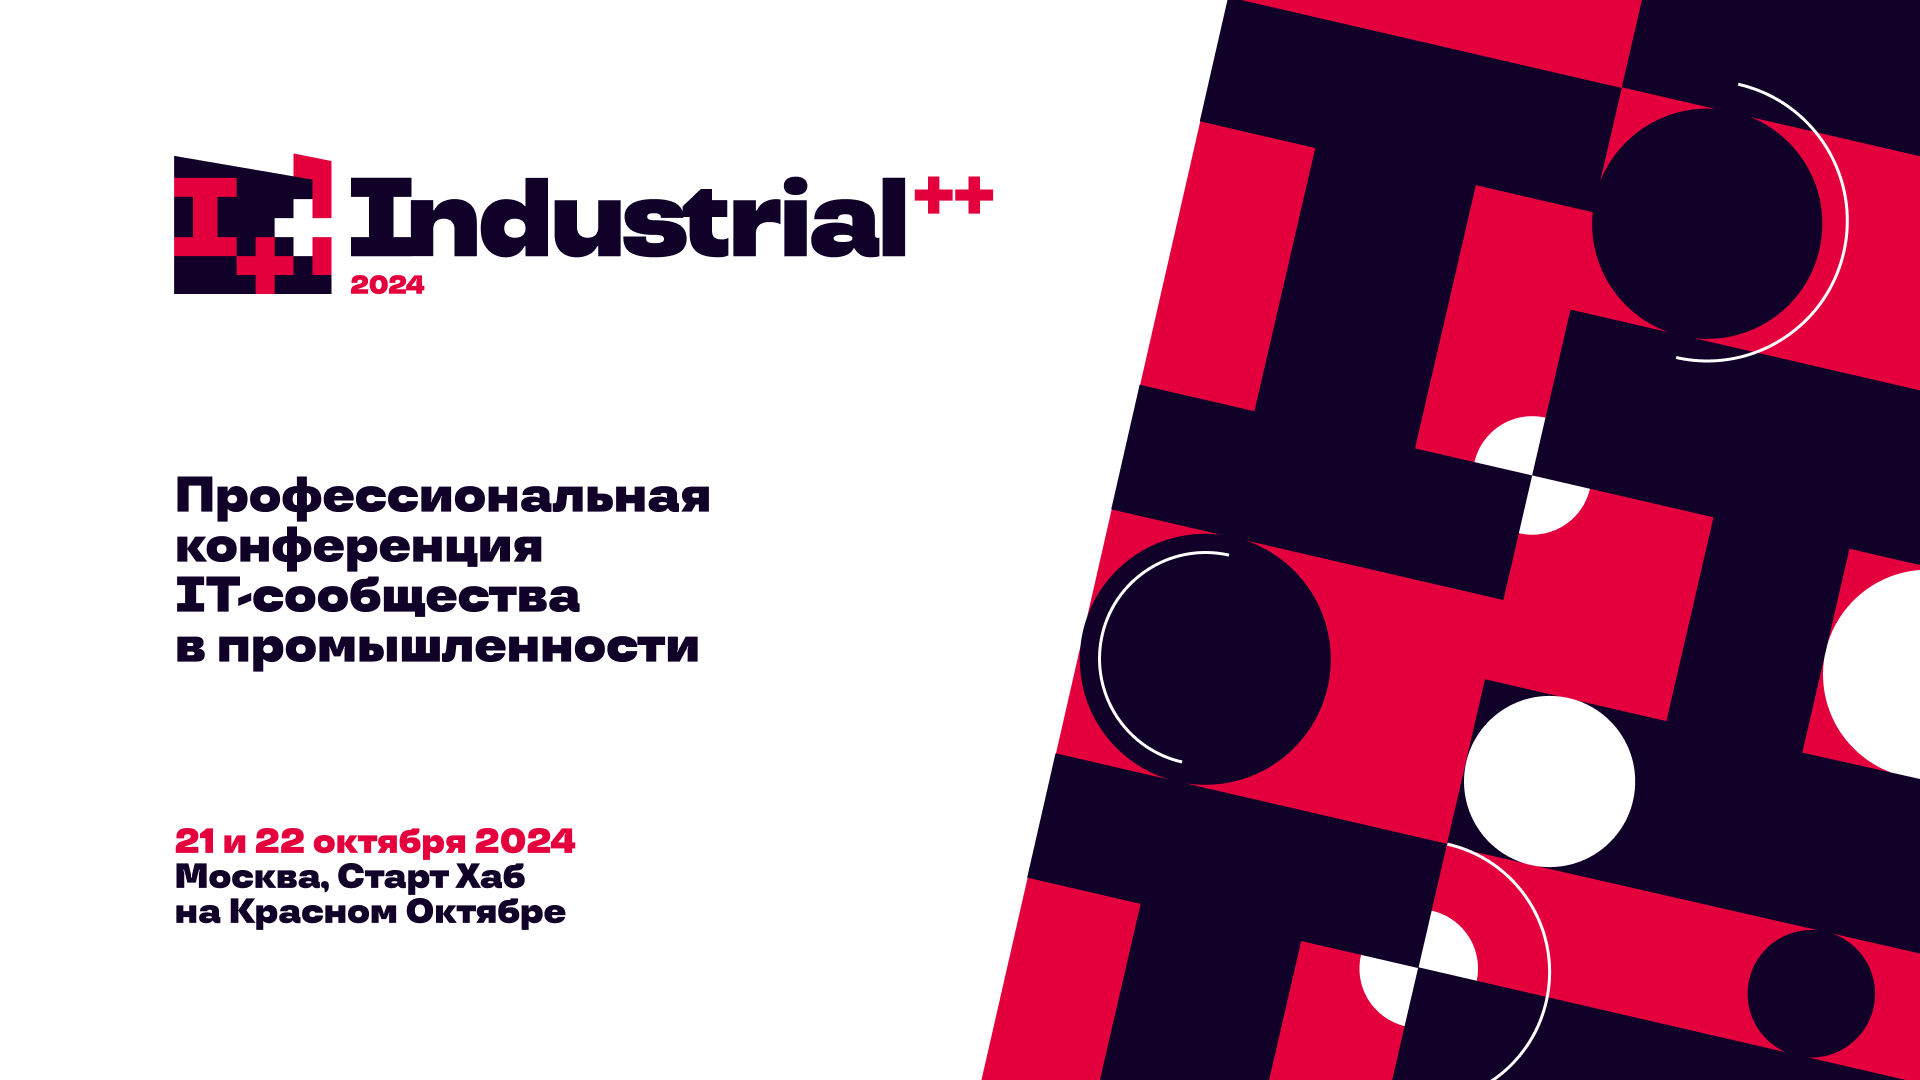 Обложка мероприятия Industrial++ Conf 2024